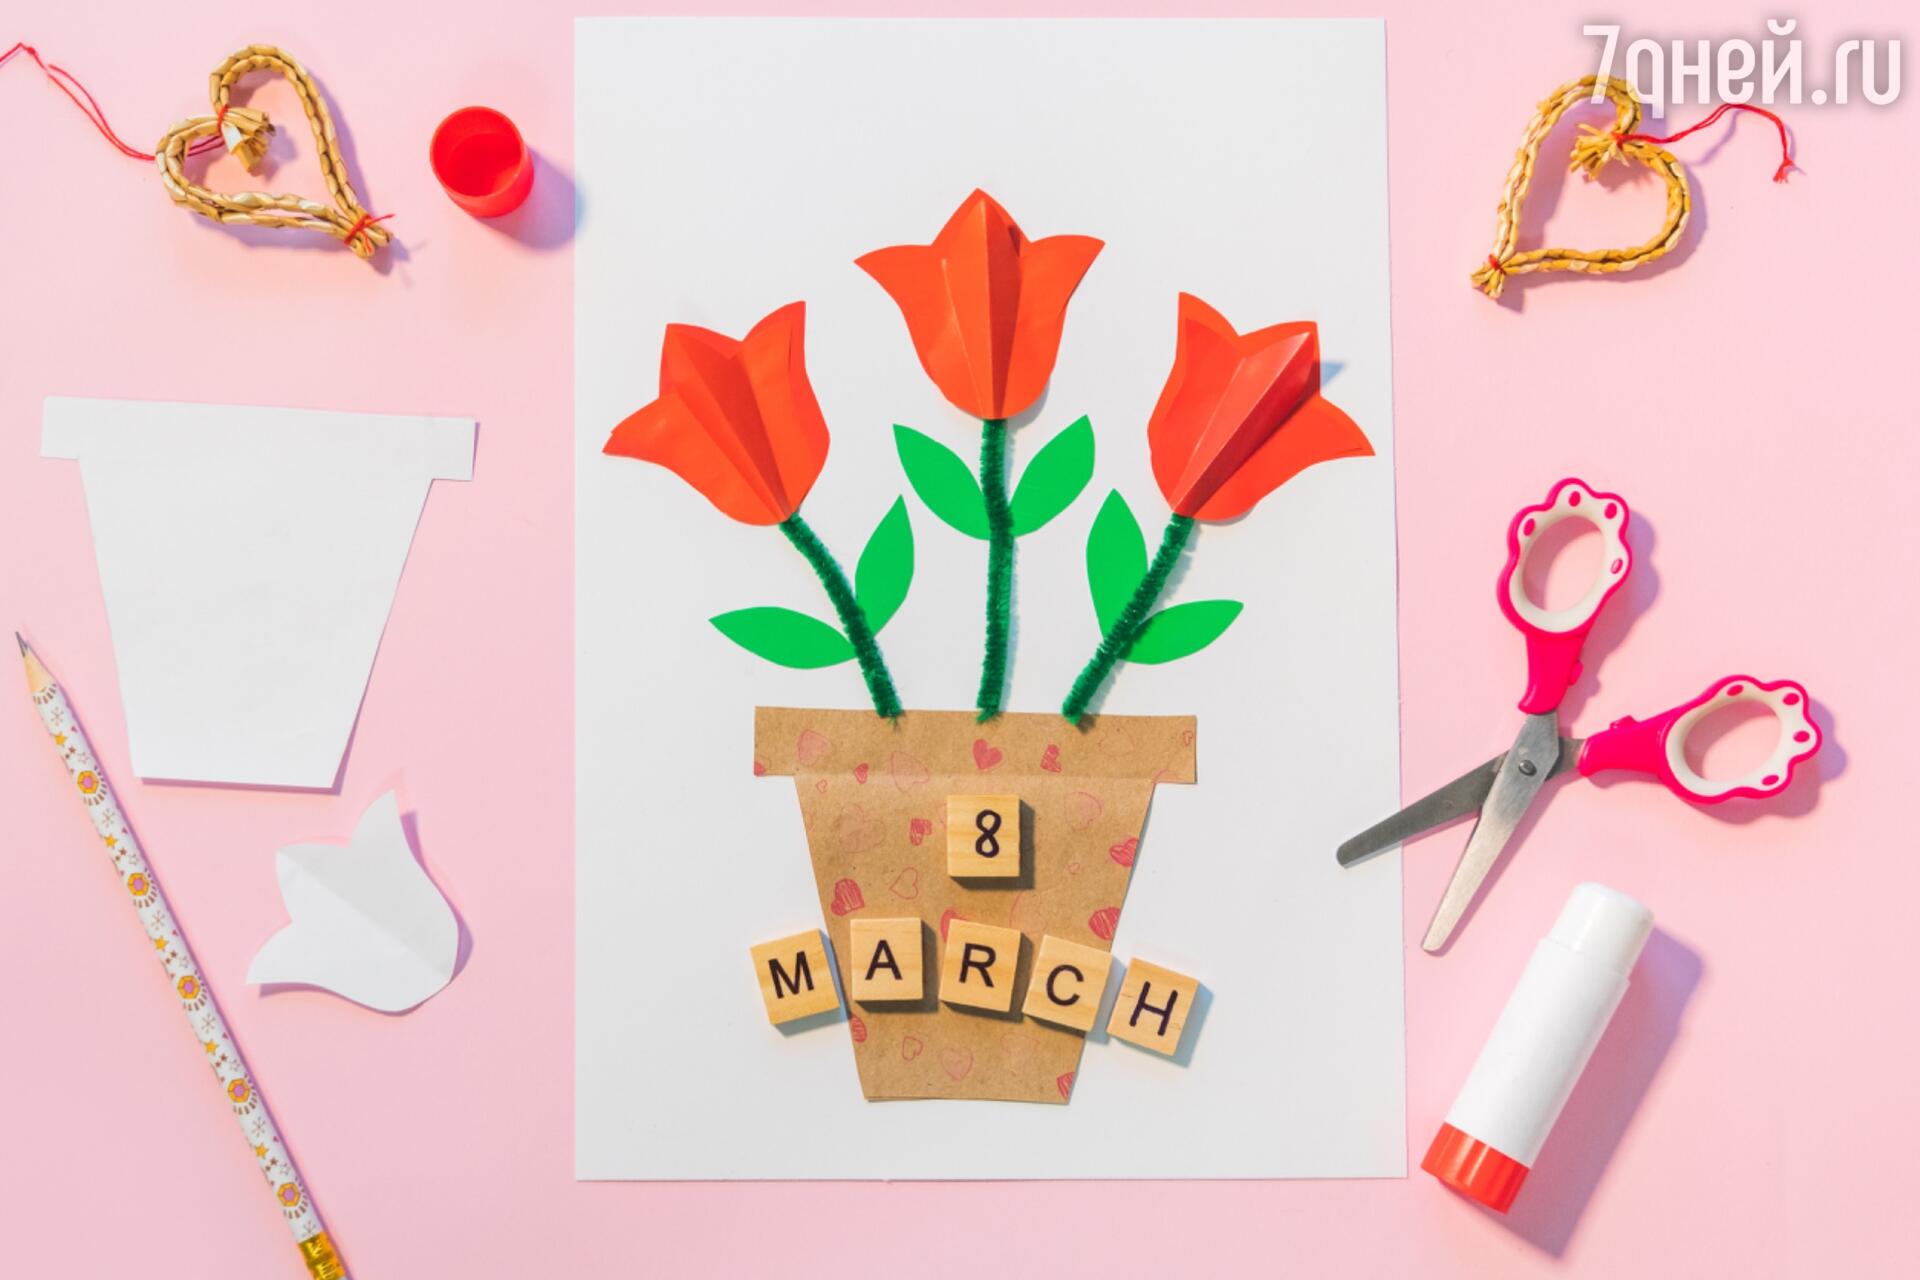 Статья: Как сделать подарок на 8 марта своими руками | Студия цветов и подарков 